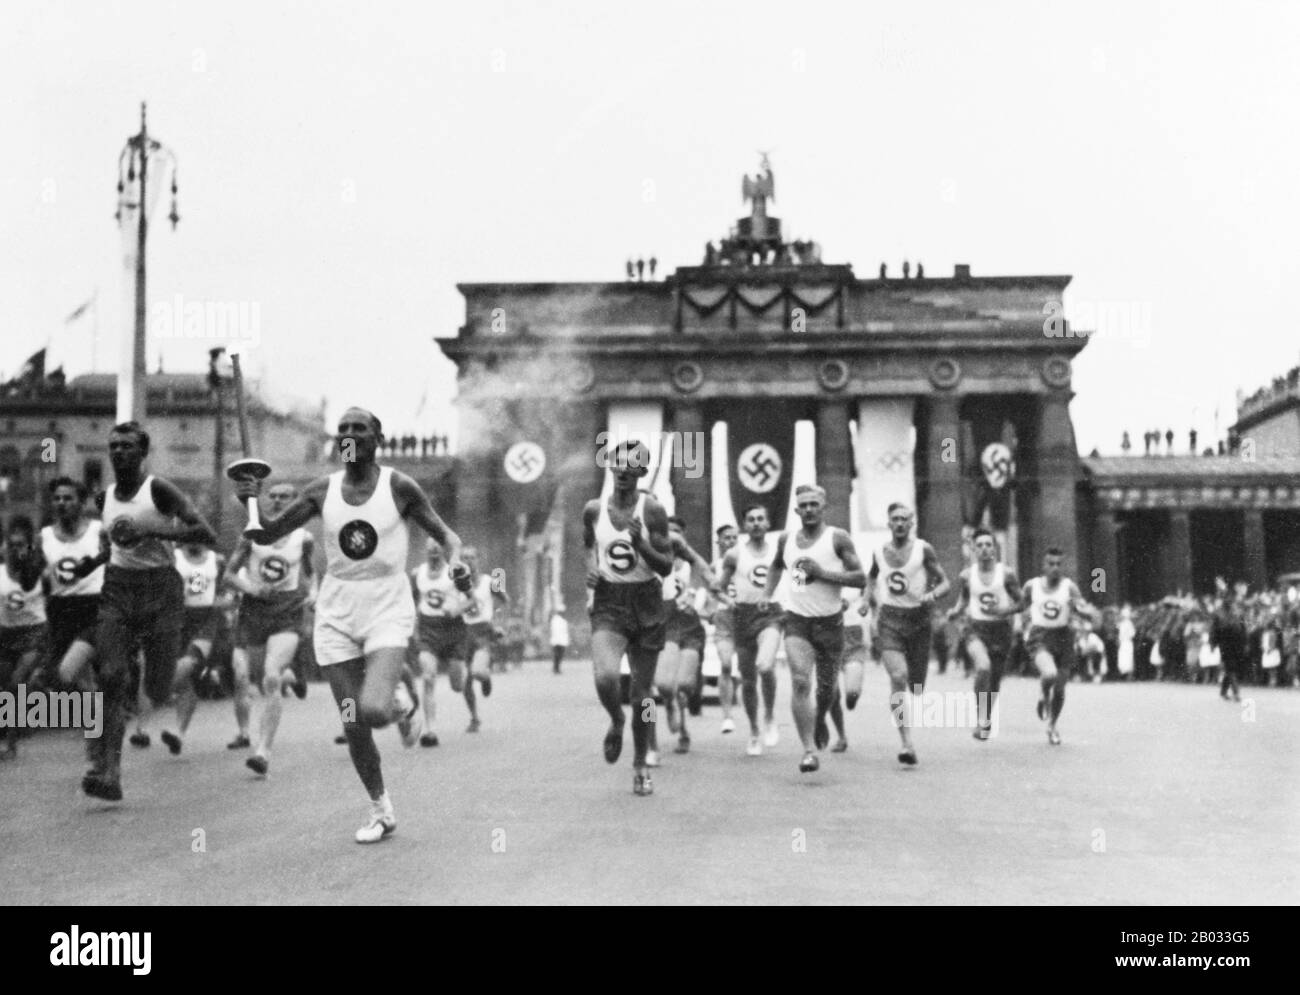 Die Olympischen Sommerspiele 1936 (deutsch: Olympische Sommerspiele 1936), offiziell bekannt als Spiele der XI-Olympiade, war eine internationale Multisportveranstaltung, die 1936 in Berlin stattfand. Reichskanzler Adolf Hitler sah in den Spielen die Möglichkeit, seine Regierung und ideale der Rassenvormachtstellung zu fördern, Stockfoto